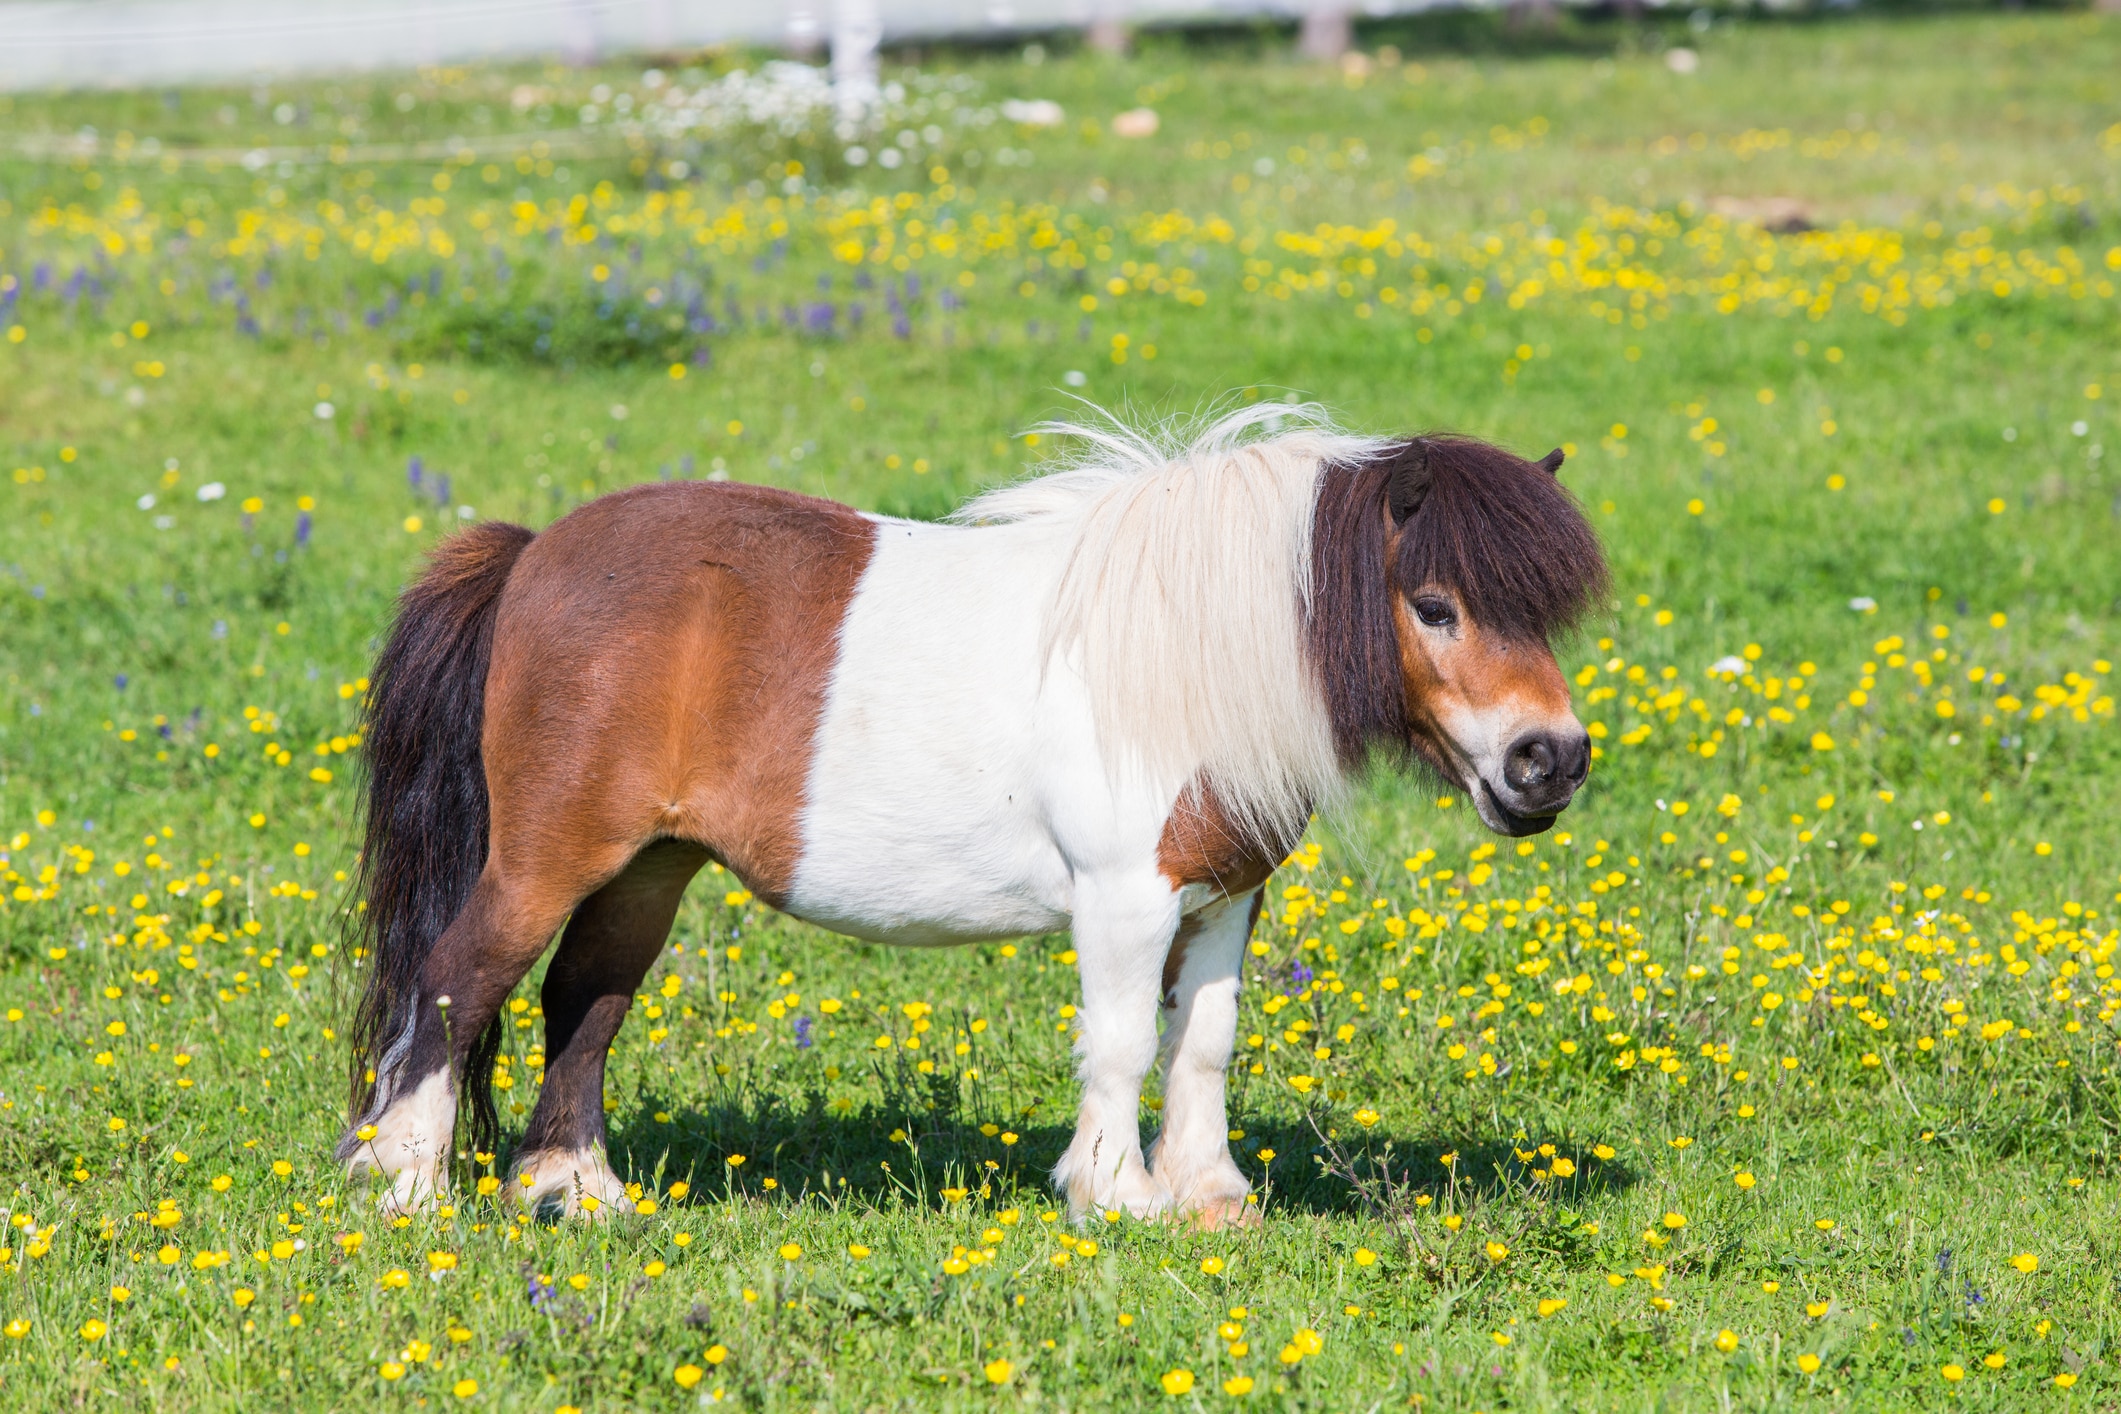 Shetland pony standing in field